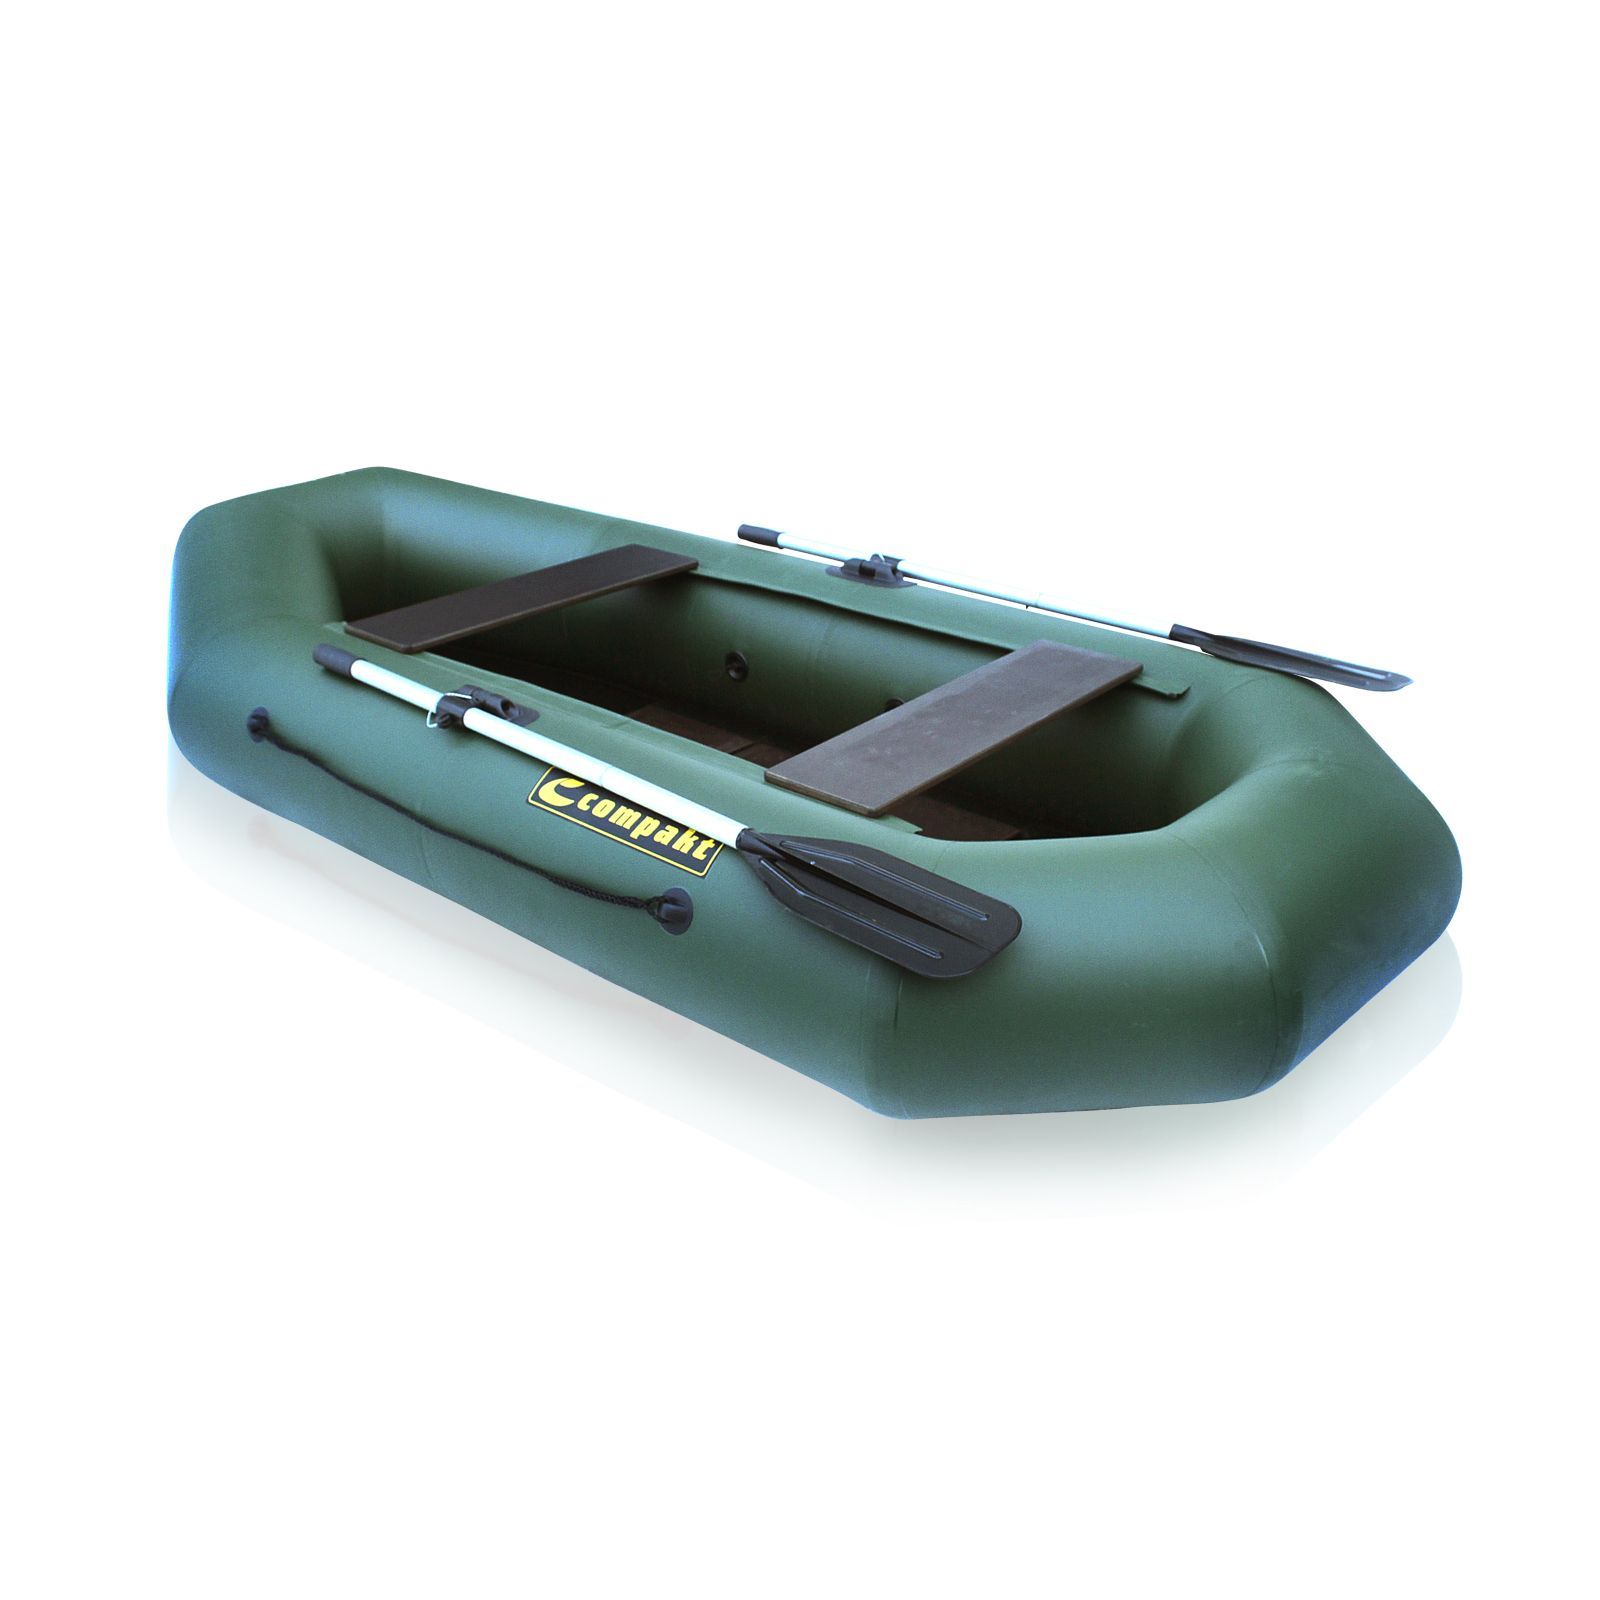 Лодка ПВХ Компакт-240N- ФС фанерная слань зеленый цвет упаковка-мешок оксфорд